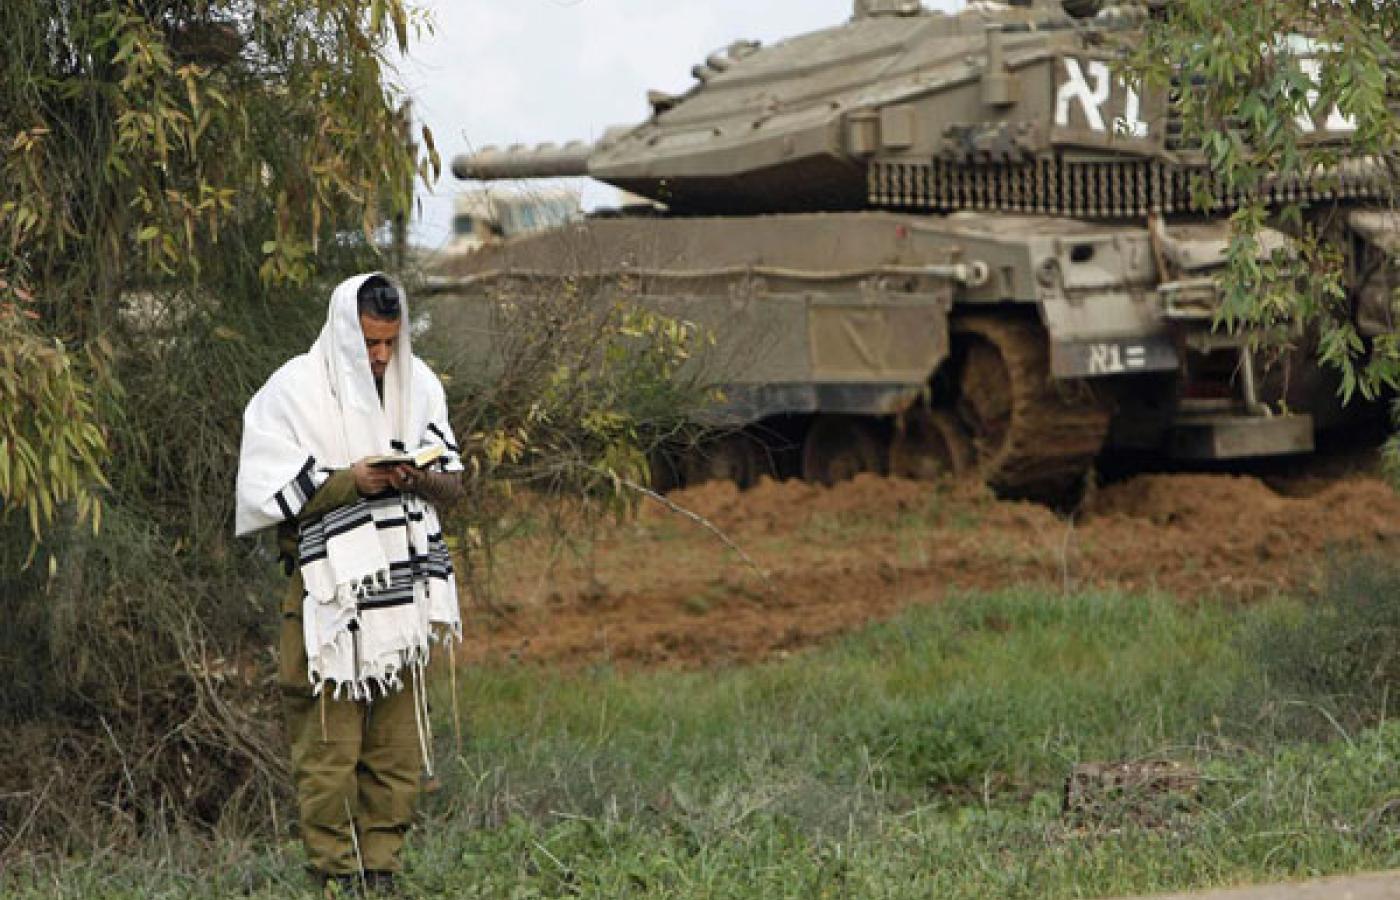 Izraelski żołnierz modlący się na granicy Izraela ze Strefą Gazy